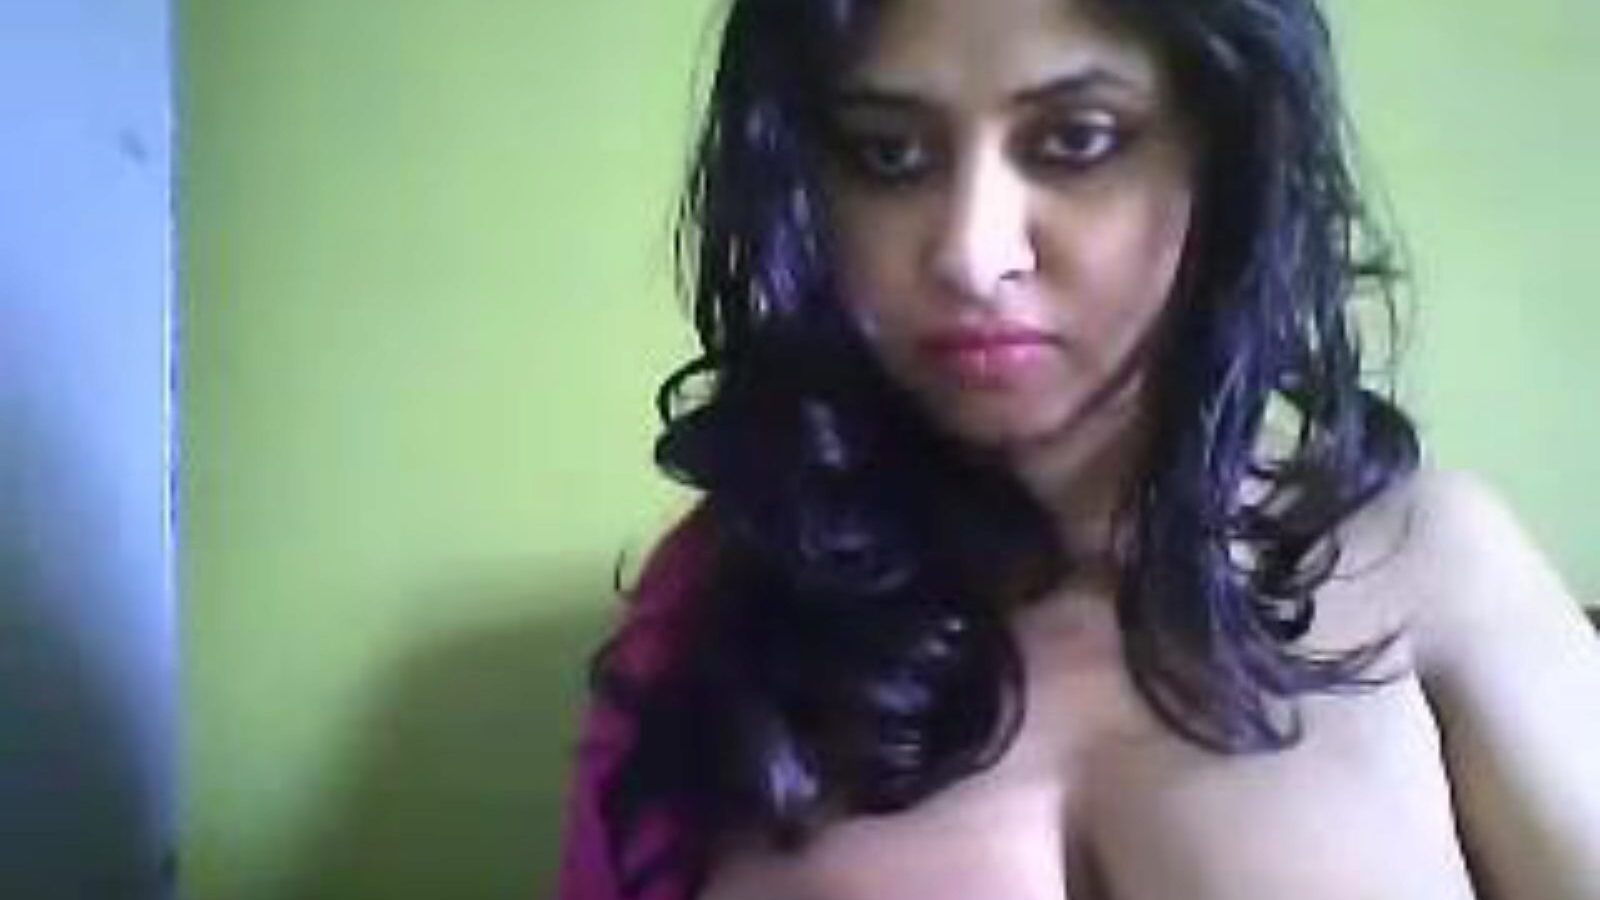 Desi Hot Cam Mutter Ich möchte Deepa ficken, kostenlose indische Porno 27: Xhamster Watch Desi Hot Cam Mutter Ich möchte Deepa Episode auf Xhamster, der größten Hookup Tube Website mit Tonnen von Free-for-All Asian Indian ficken & xxx heiße Porno-Videos